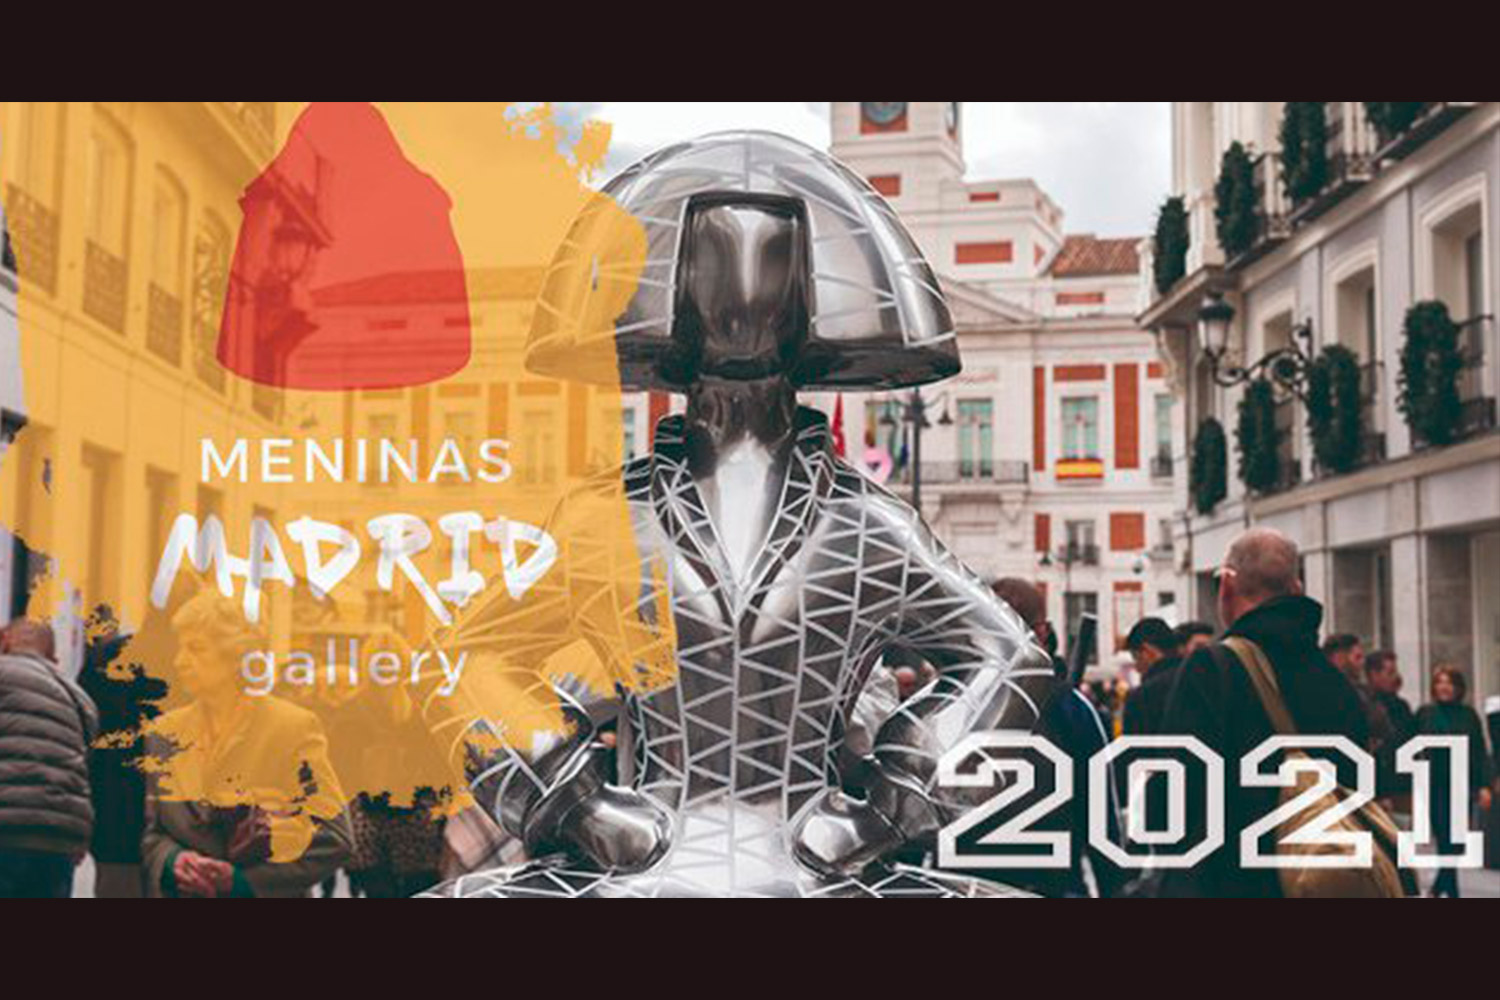 Escultura de las Meninas Madrid Gallery 2021